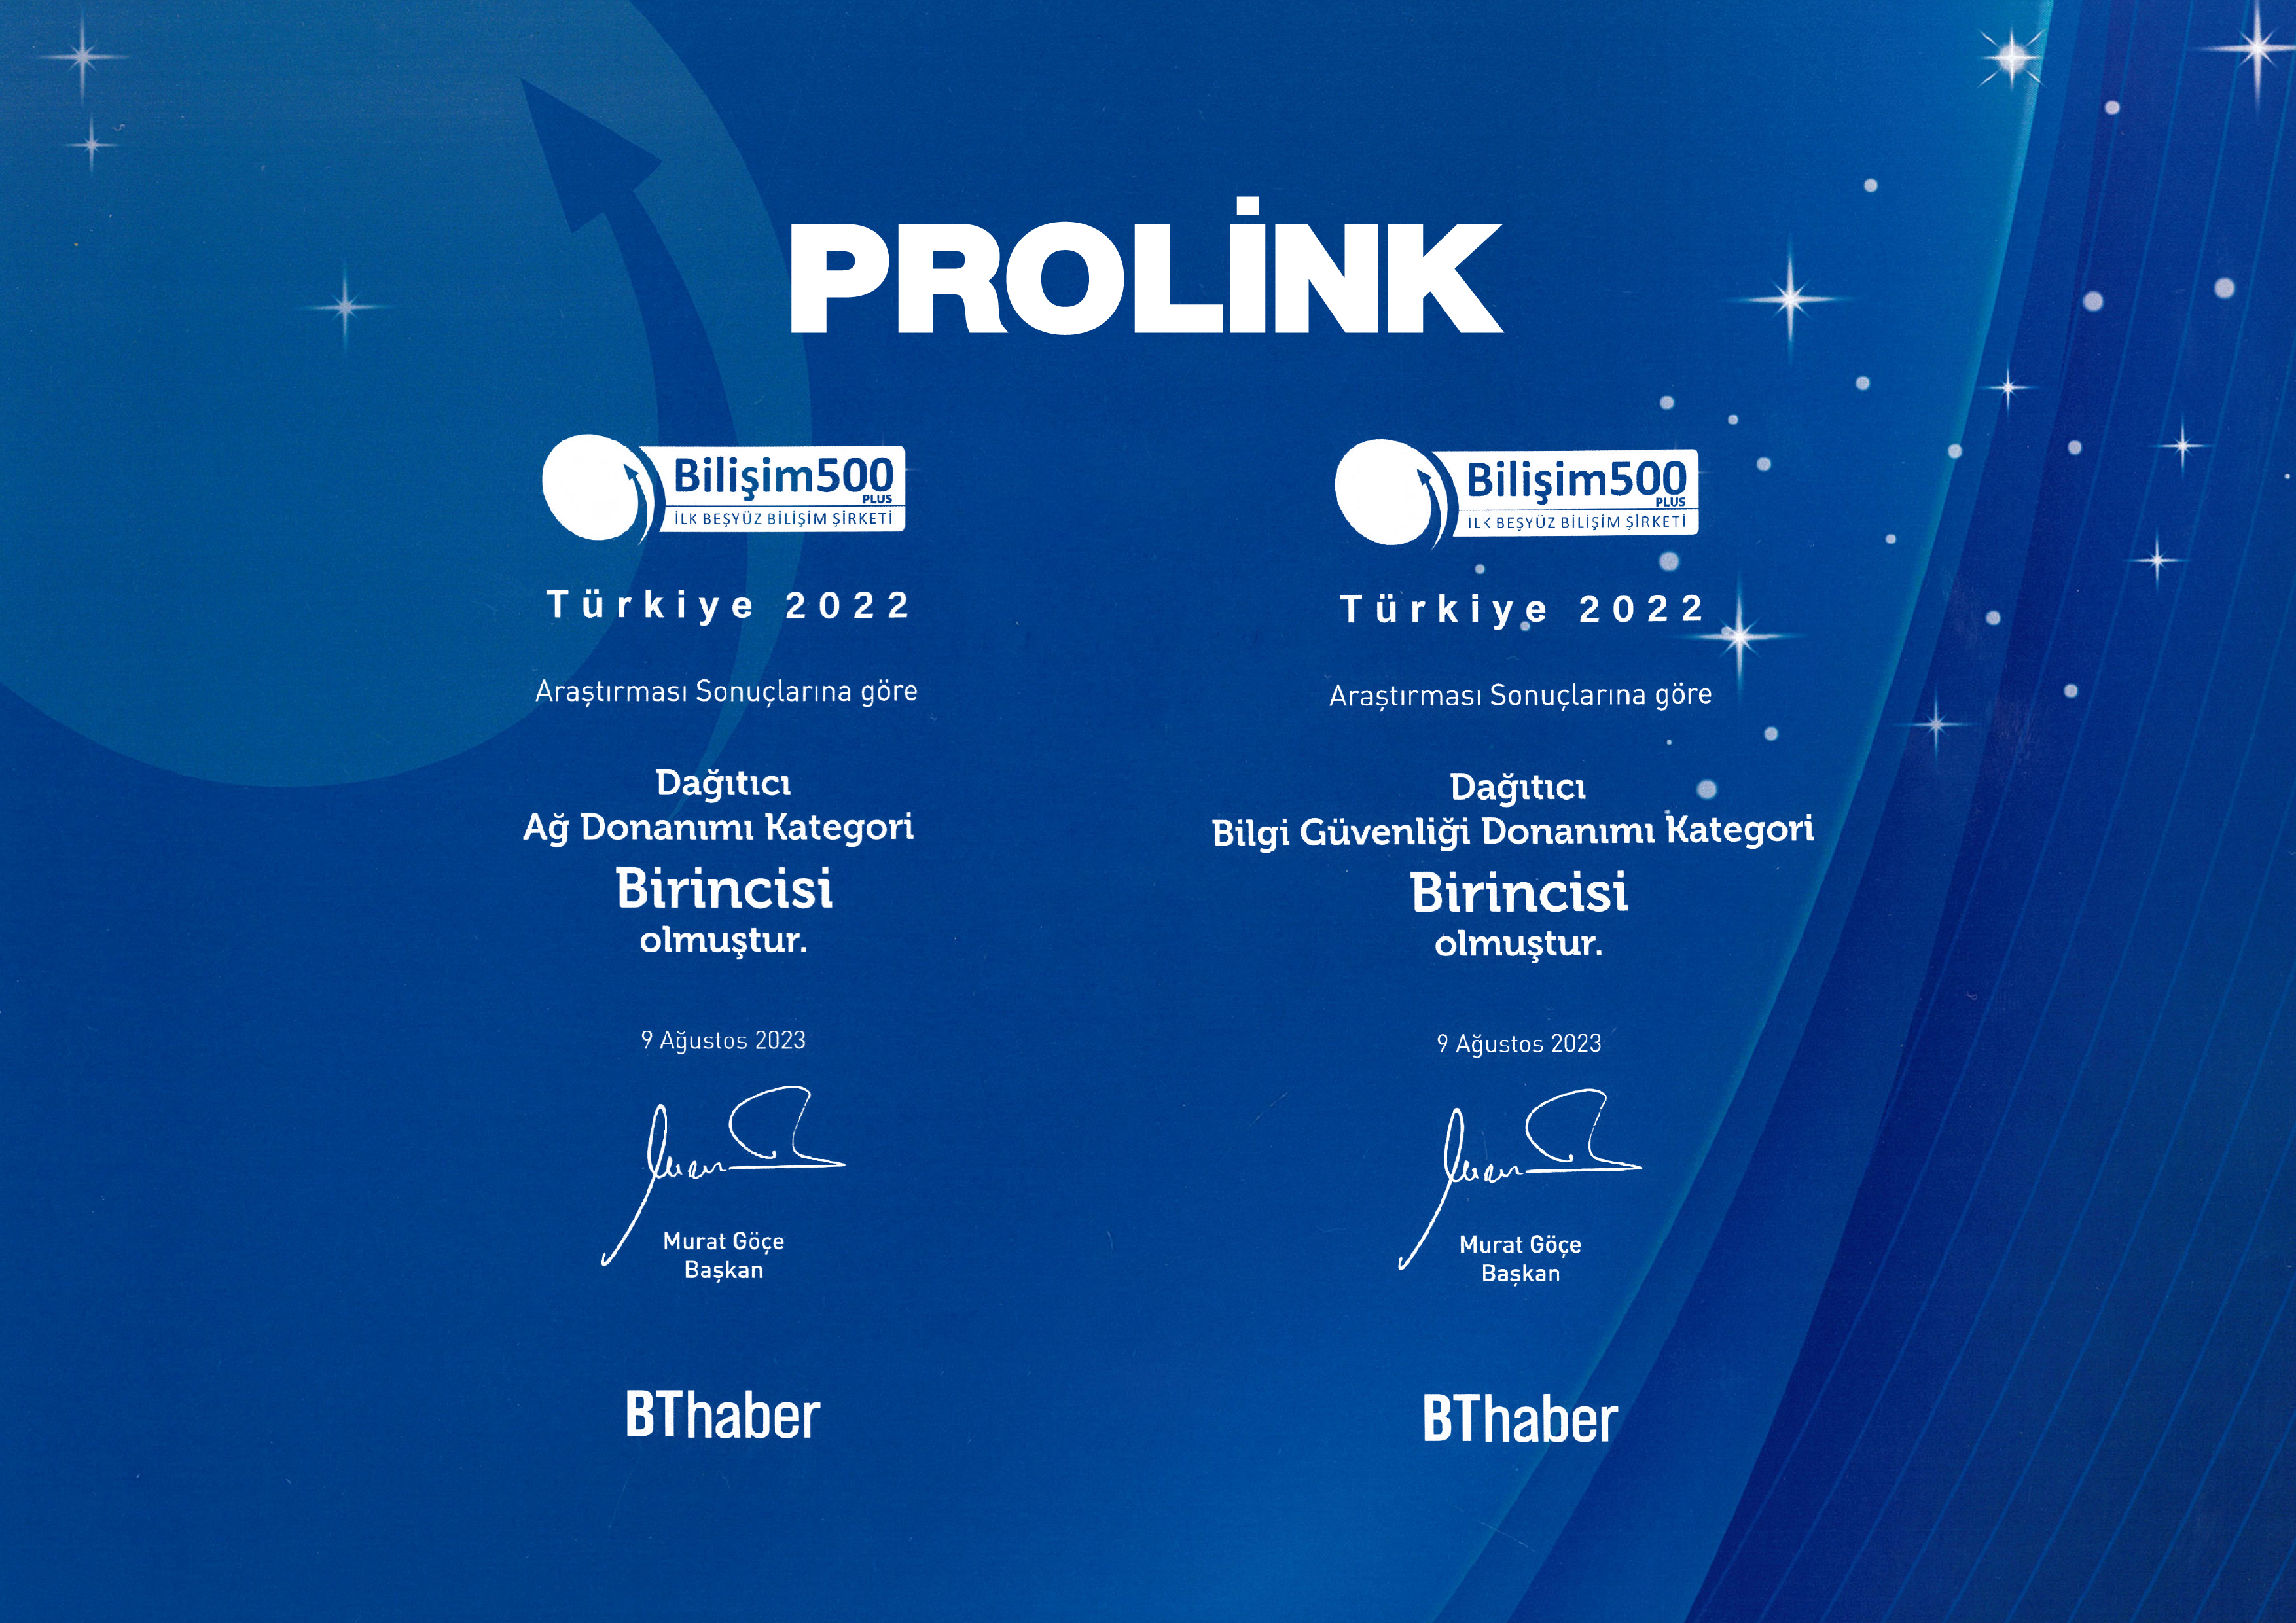 Prolink İlk 500 Bilişim Şirketi arasında 52. sırada yer aldı